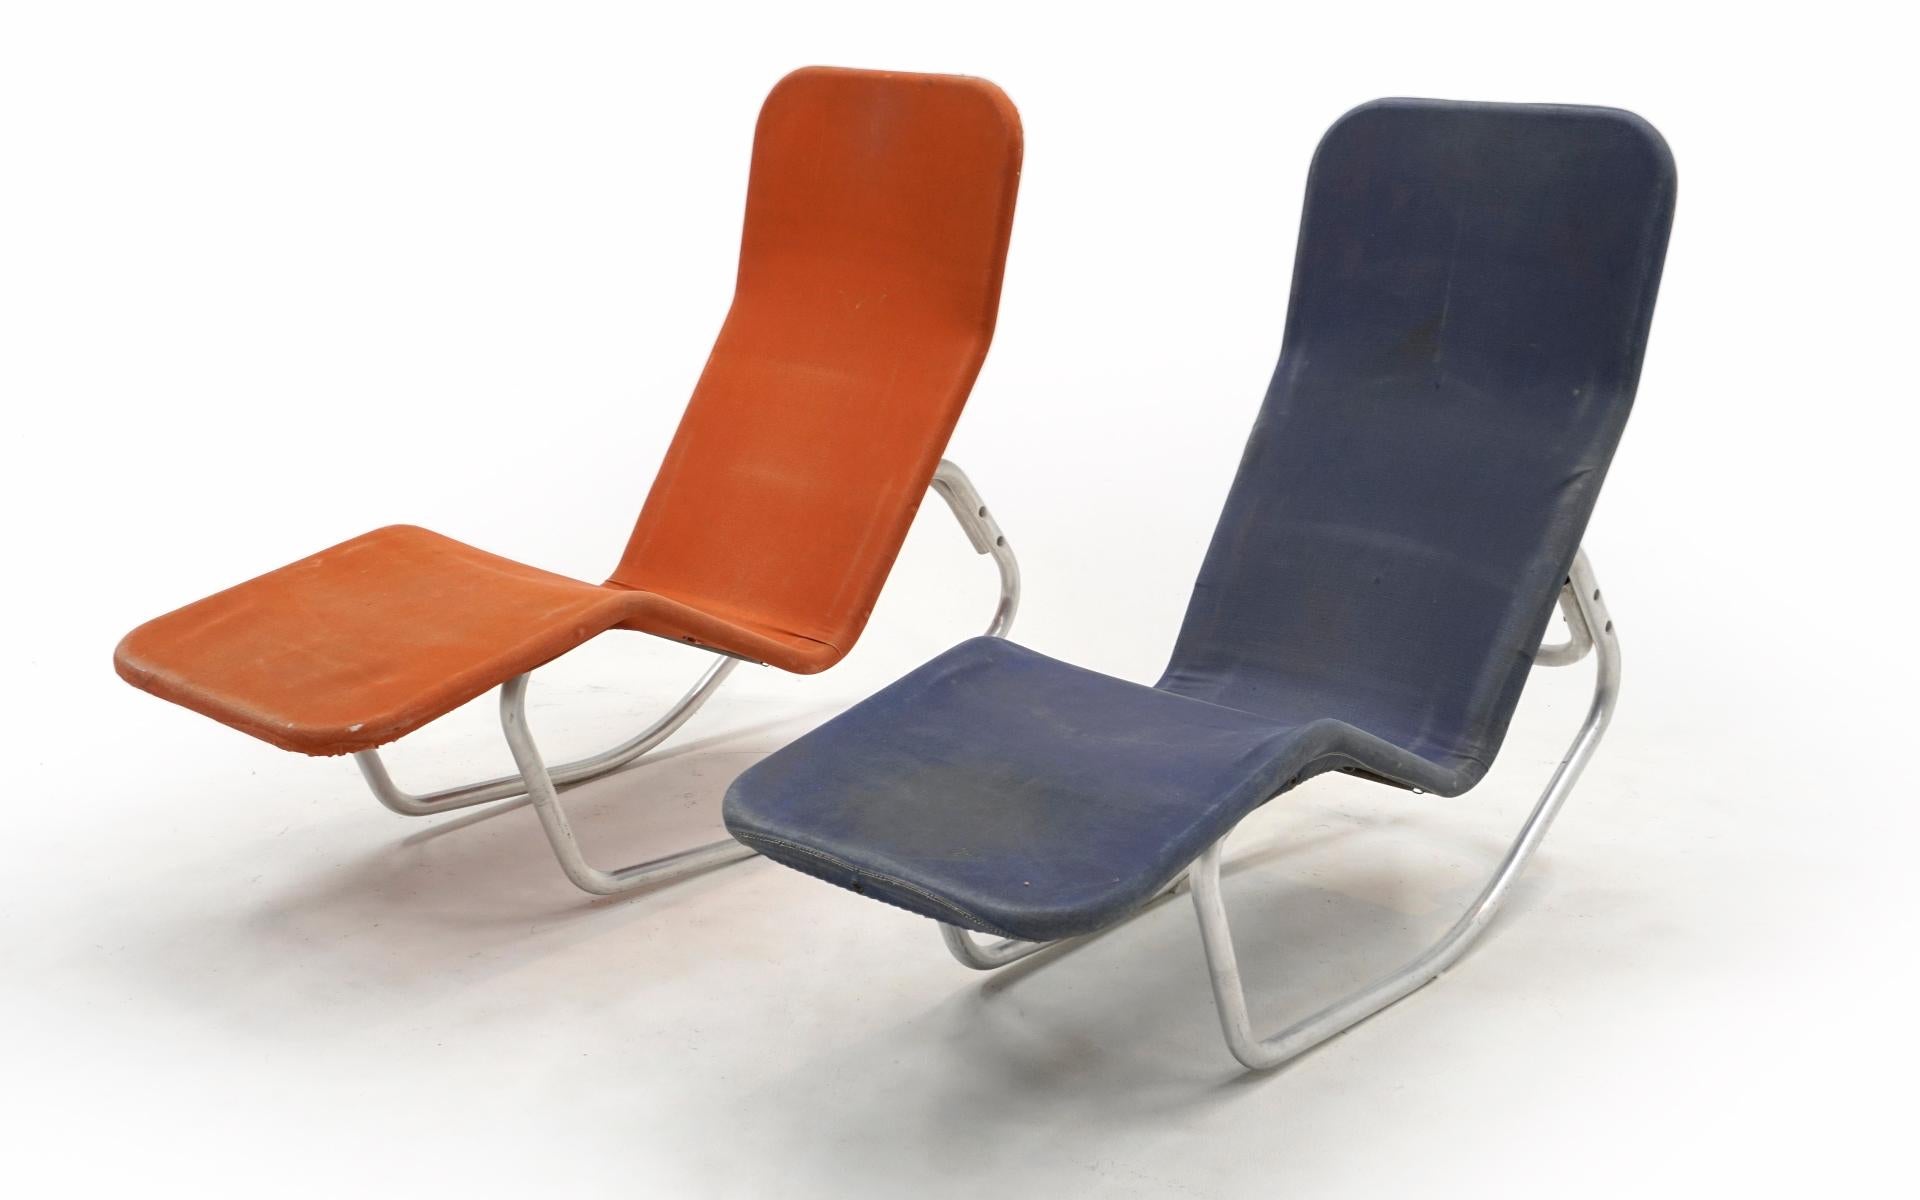 Zwei 1940er Barwa Indoor / Outdoor Chaise Lounge Stühle mit den ursprünglichen orange und blau Leinwand Abdeckungen über dem Aluminium-Rohrrahmen. Sehr leicht, robust und funktionell. Lehnen Sie sich zurück, und der Stuhl lehnt sich zurück. Diese